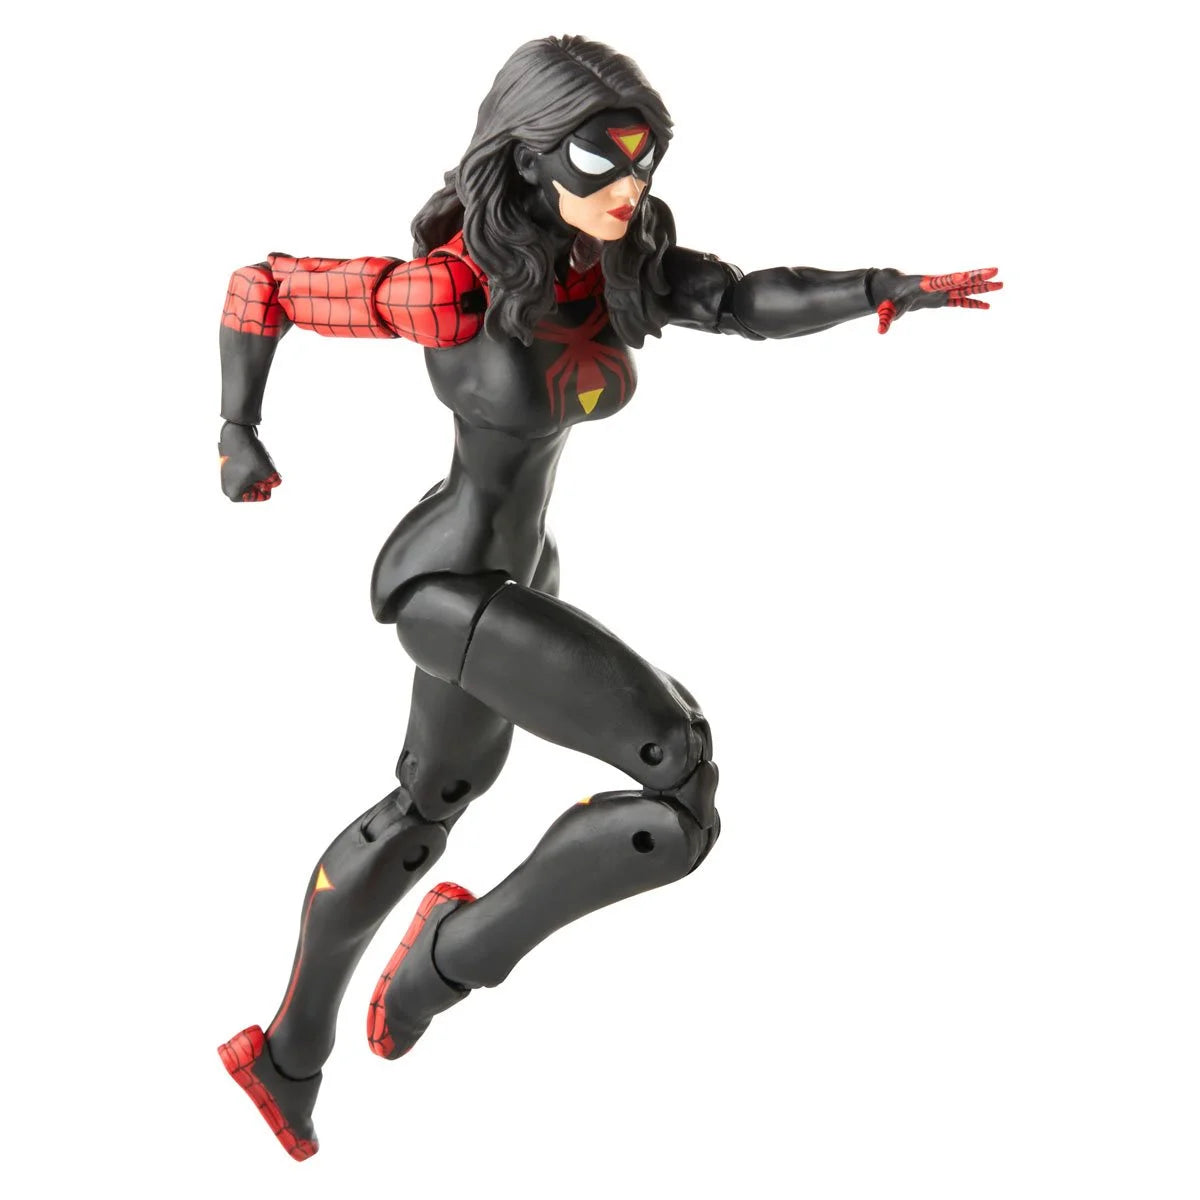 Marvel Legends Spider-Man - Jessica Drew Spider-Woman Action Figure Toy